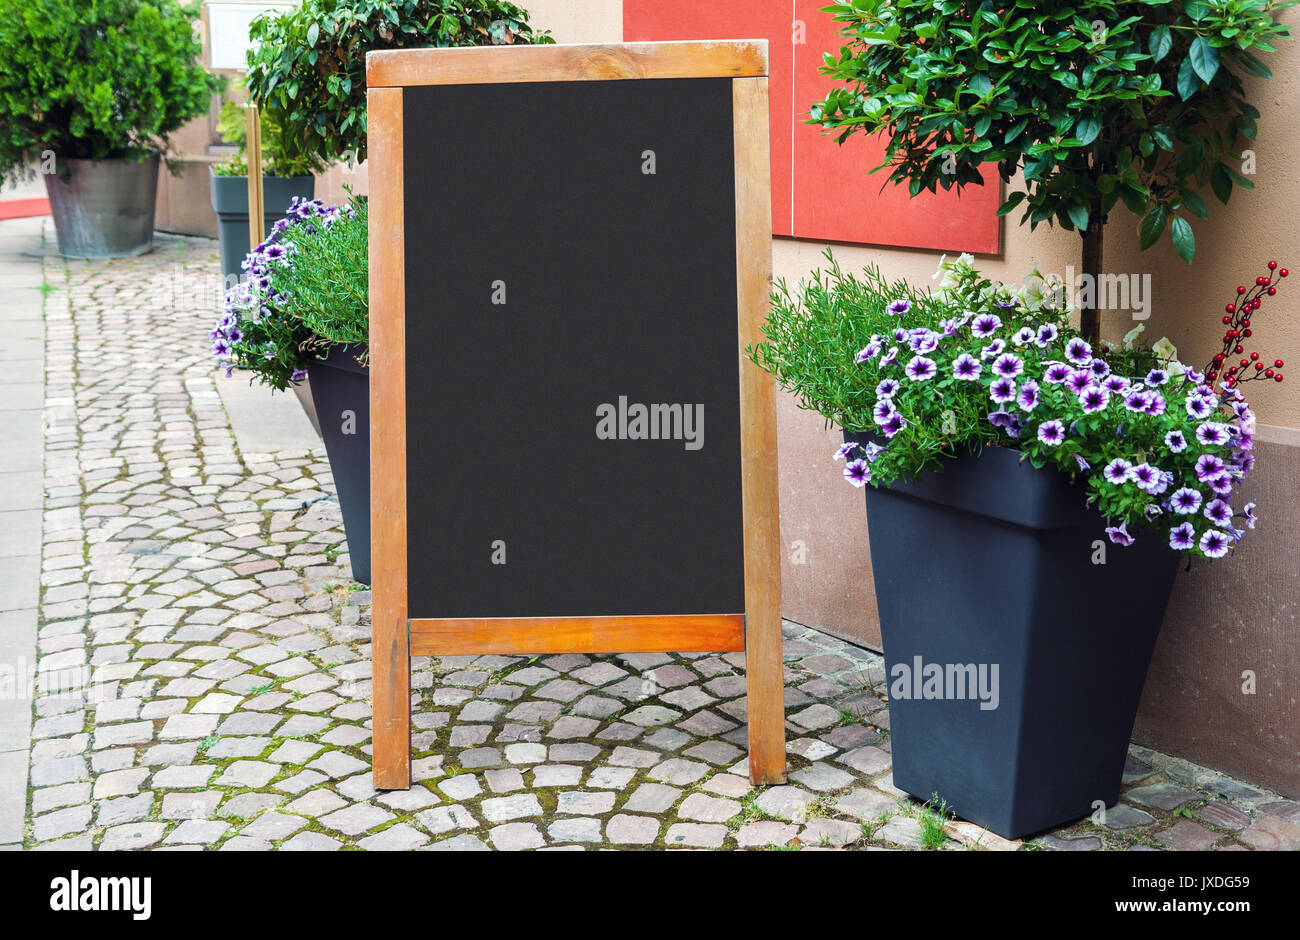 Menu vuoto blackboard sulla strada con vasi di fiori e piante verdi Foto Stock